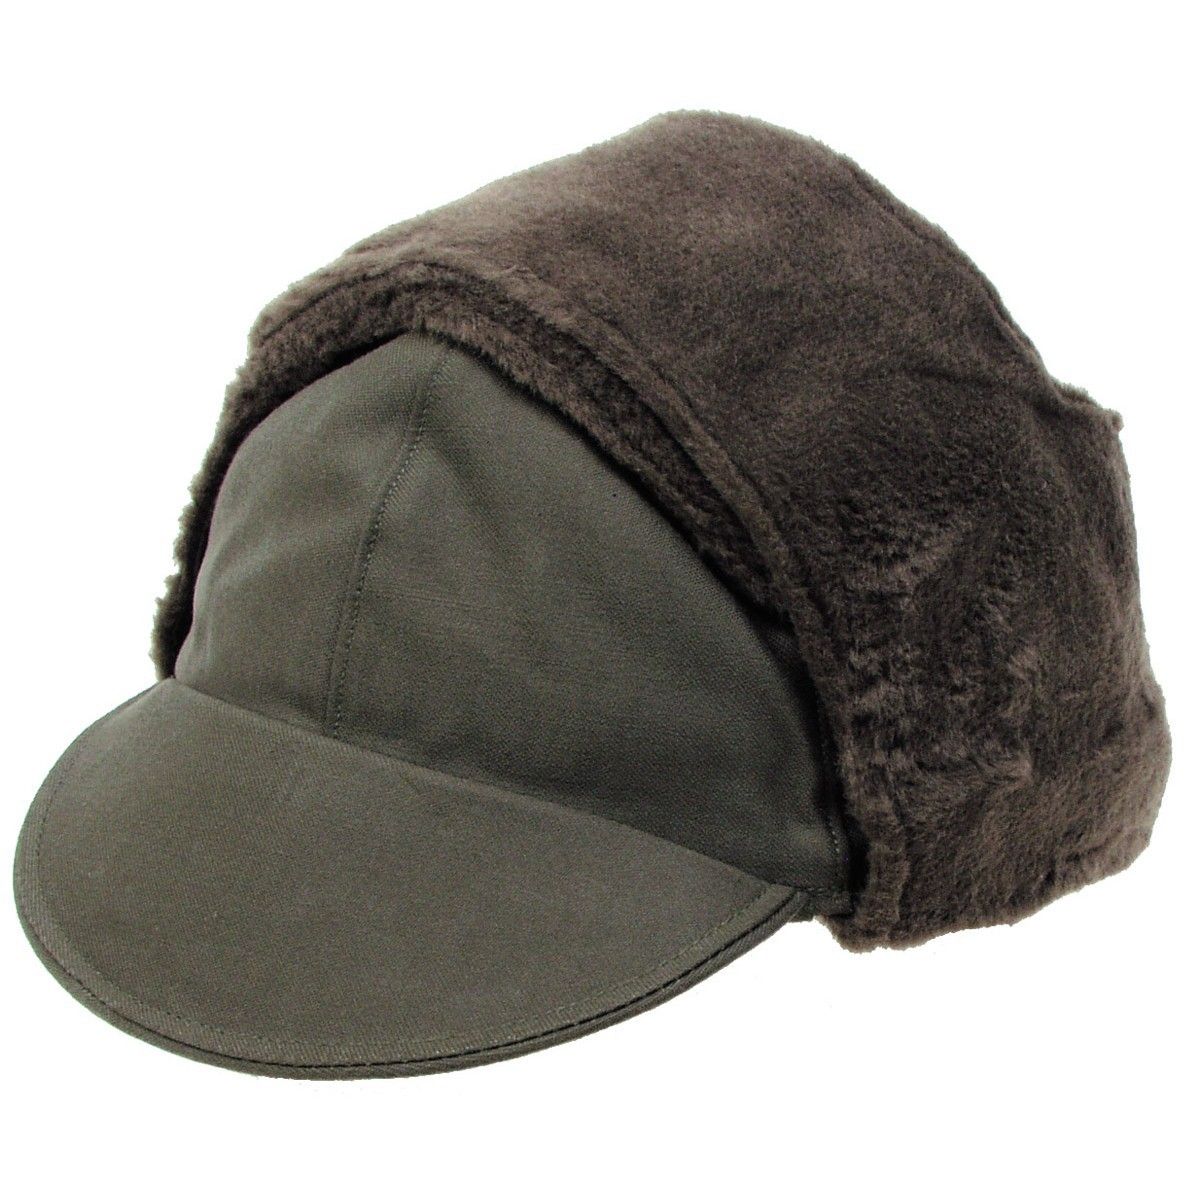 niemiecka czapka zimowa wojskowa - oliwkowa używana 61